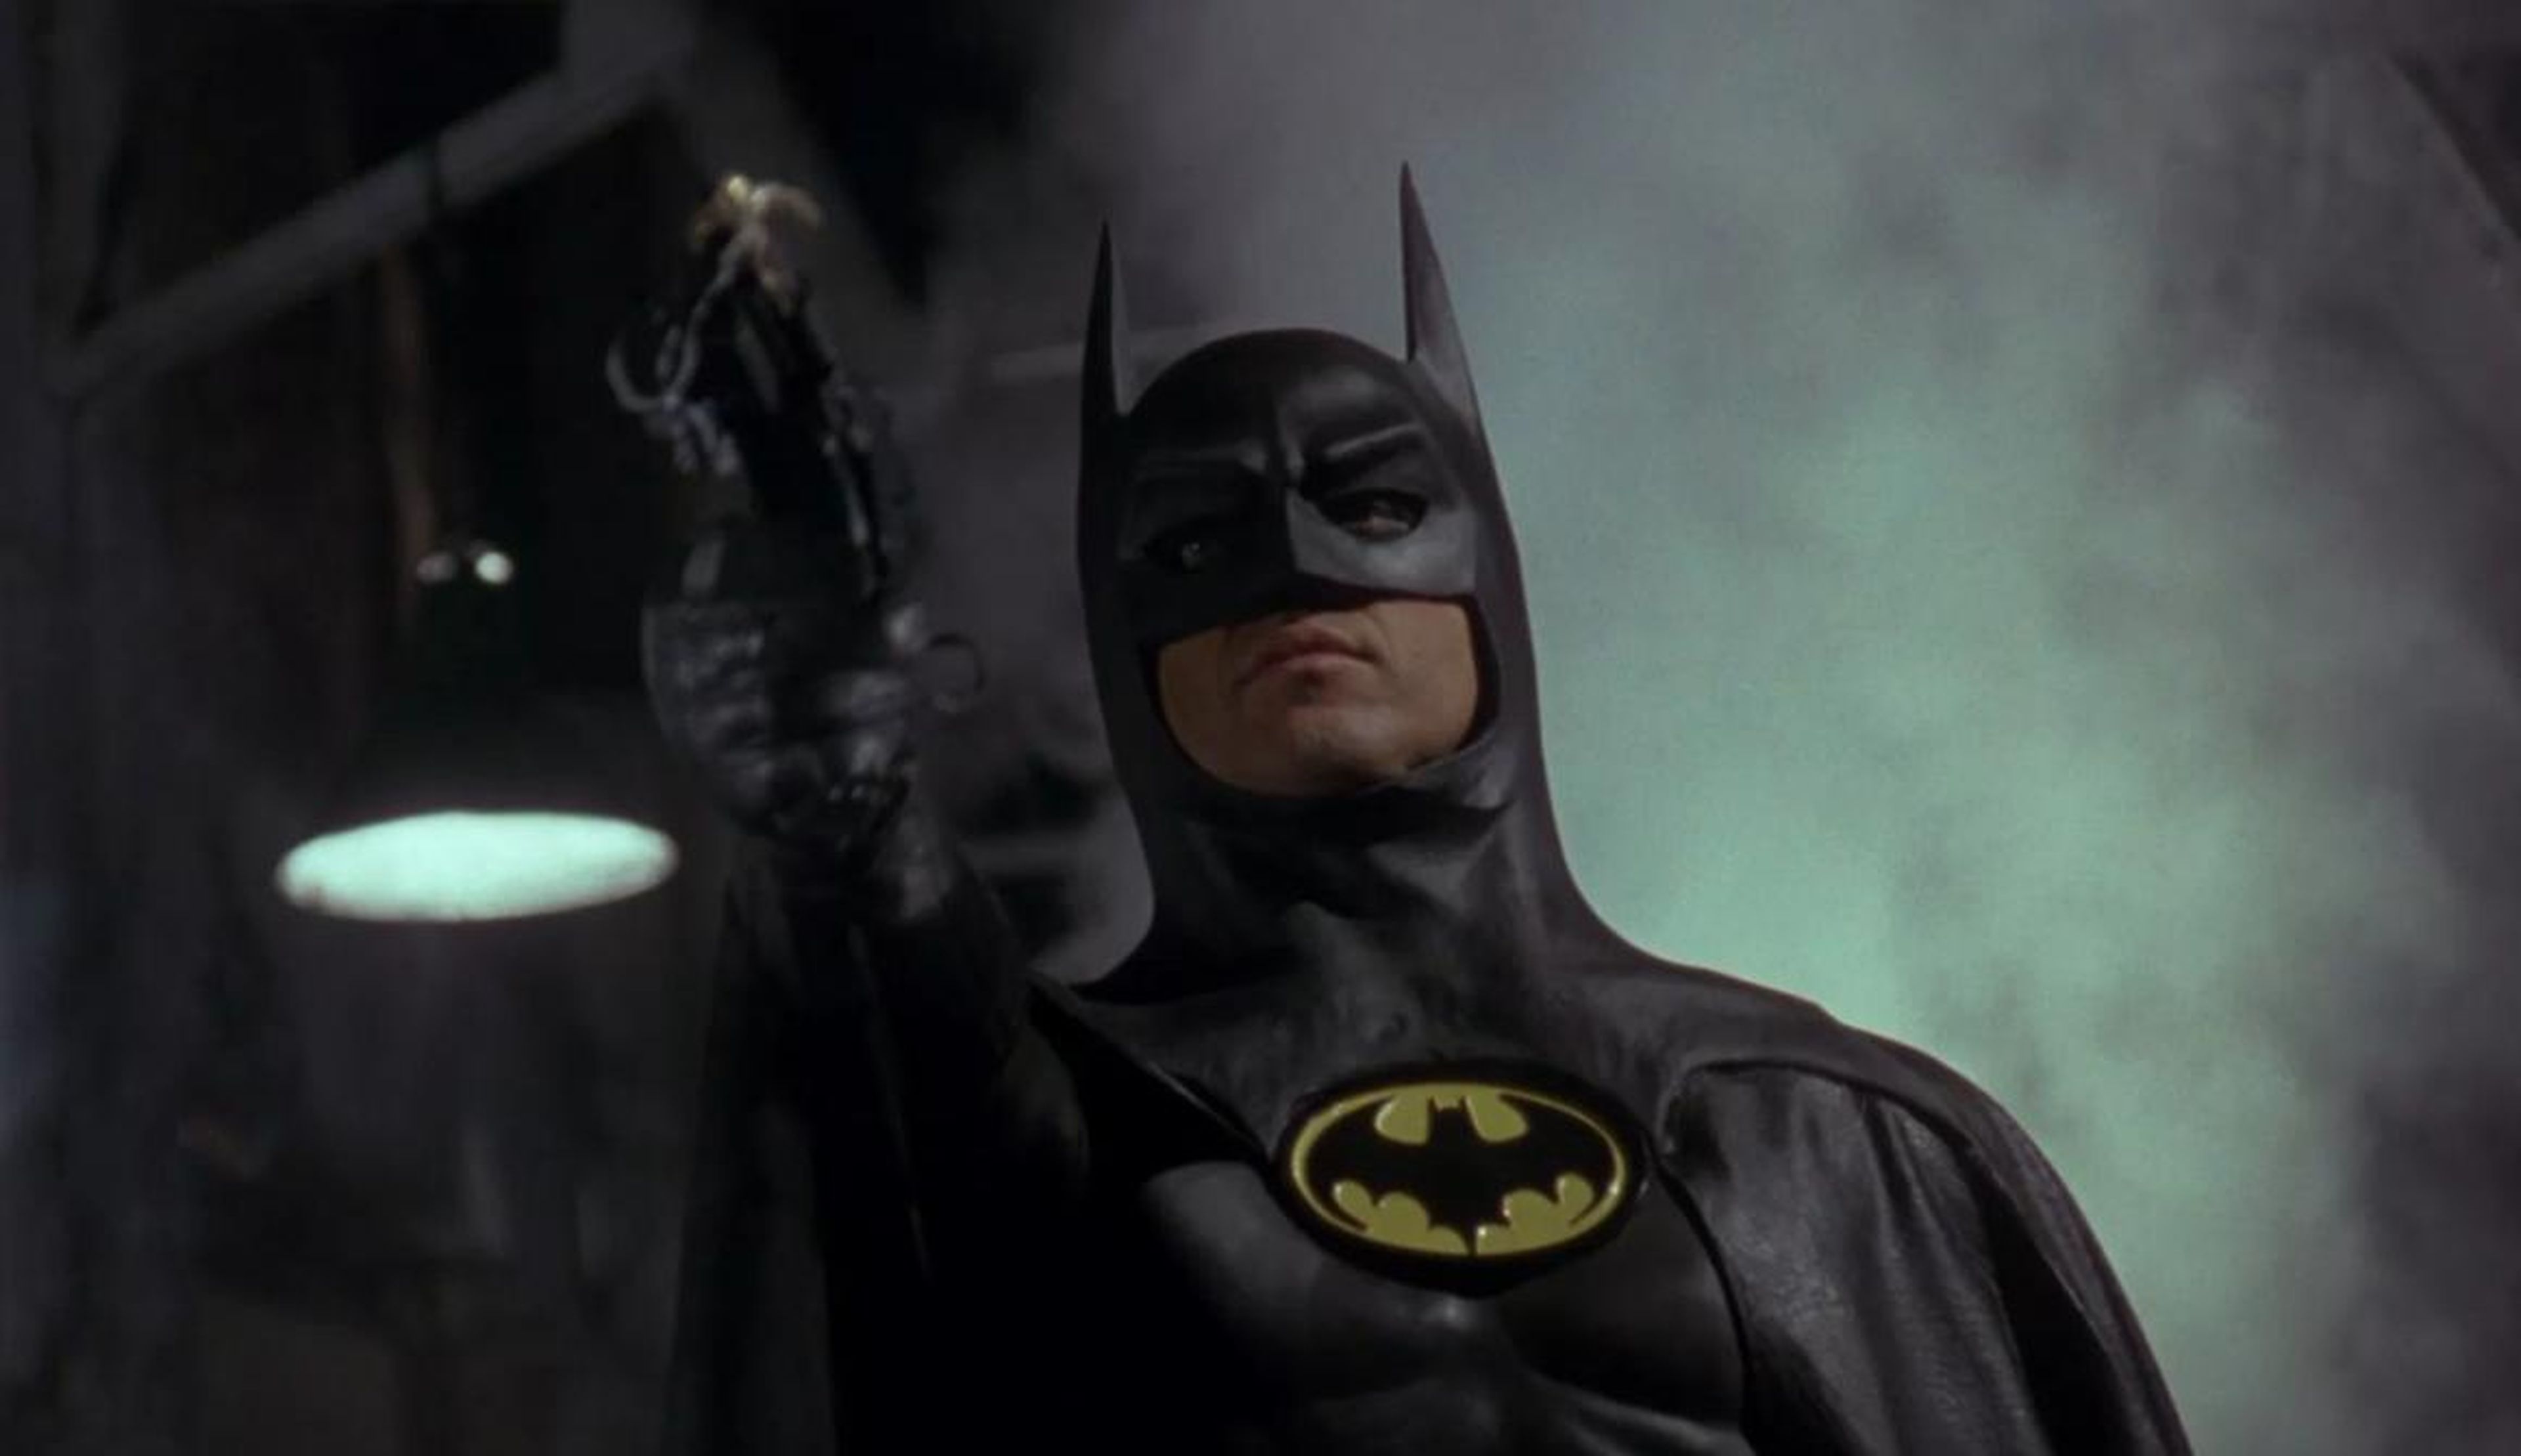 16. Michael Keaton as Bruce Wayne/Batman in "Batman" (1989)